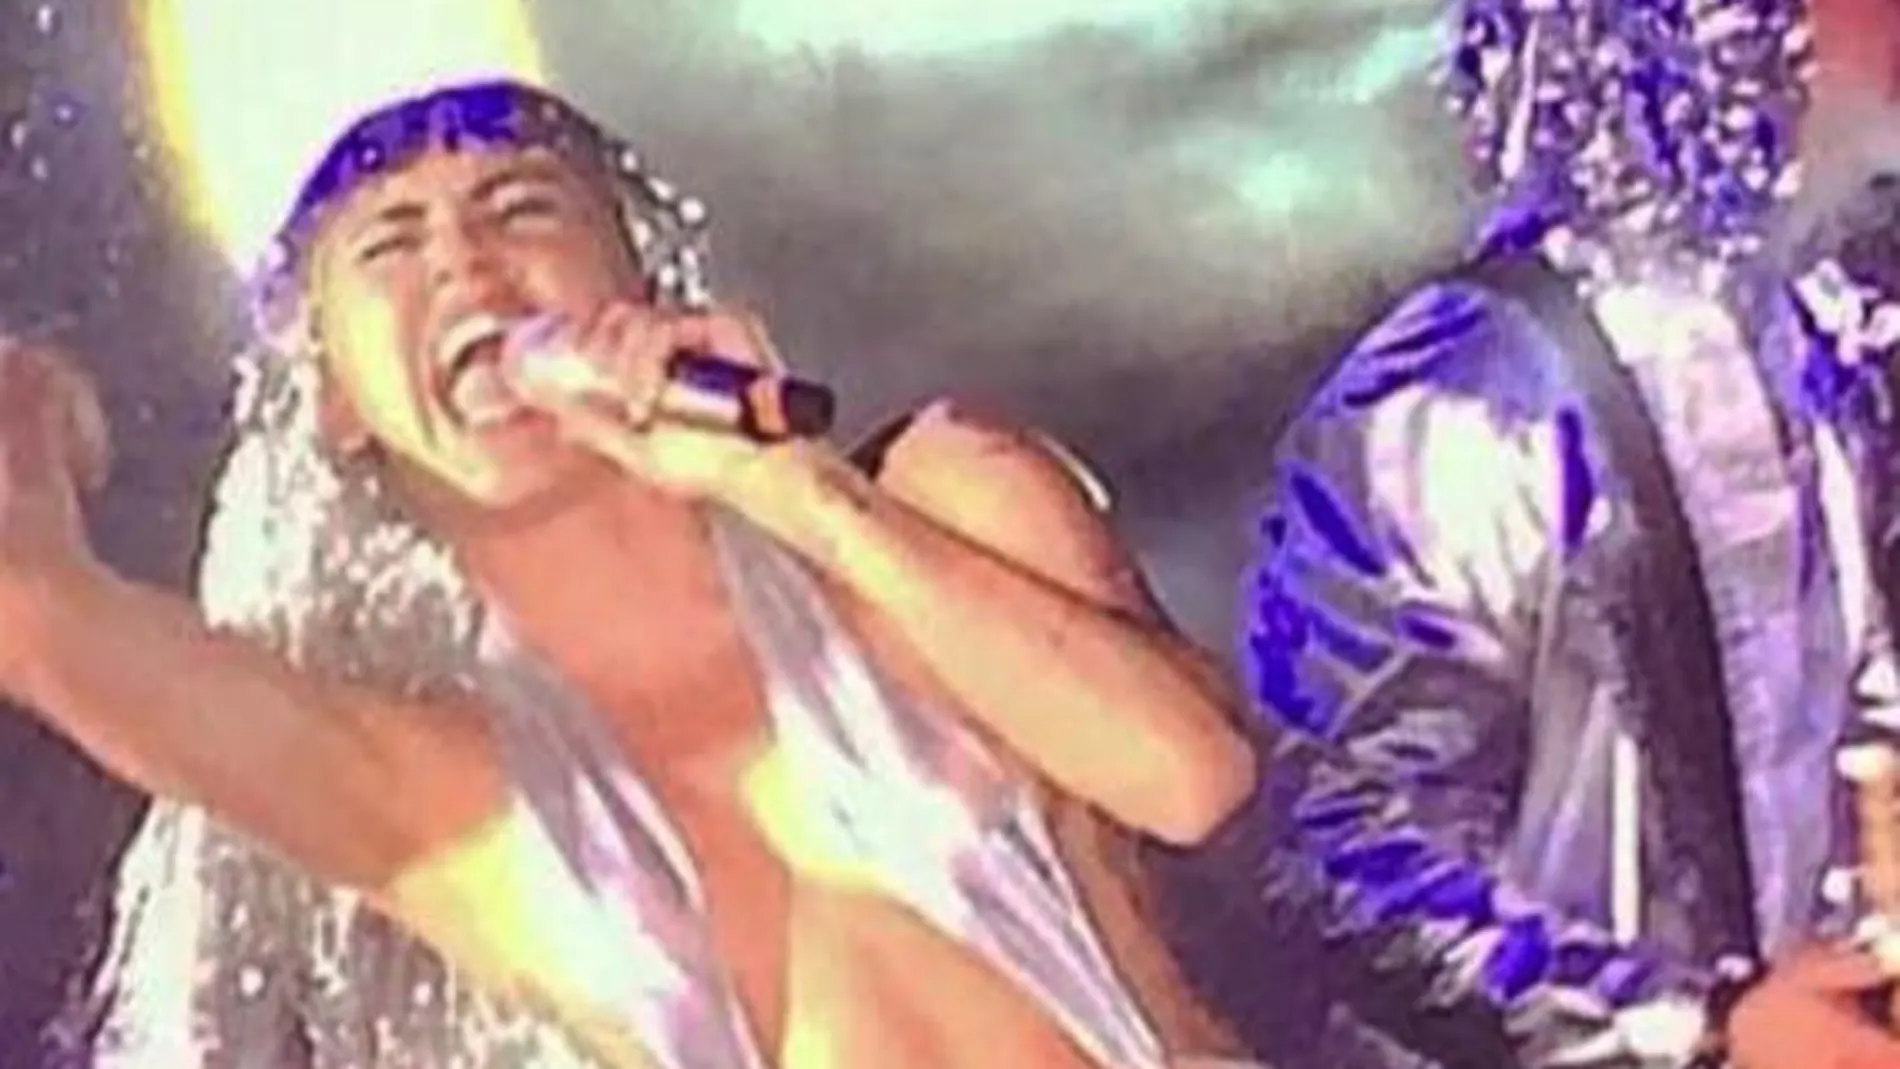 Imagen proporcionada por Lesley Abravanel, de Miley Cyrus durante la actuación en el Raleigh Hotel, en Miami Beach